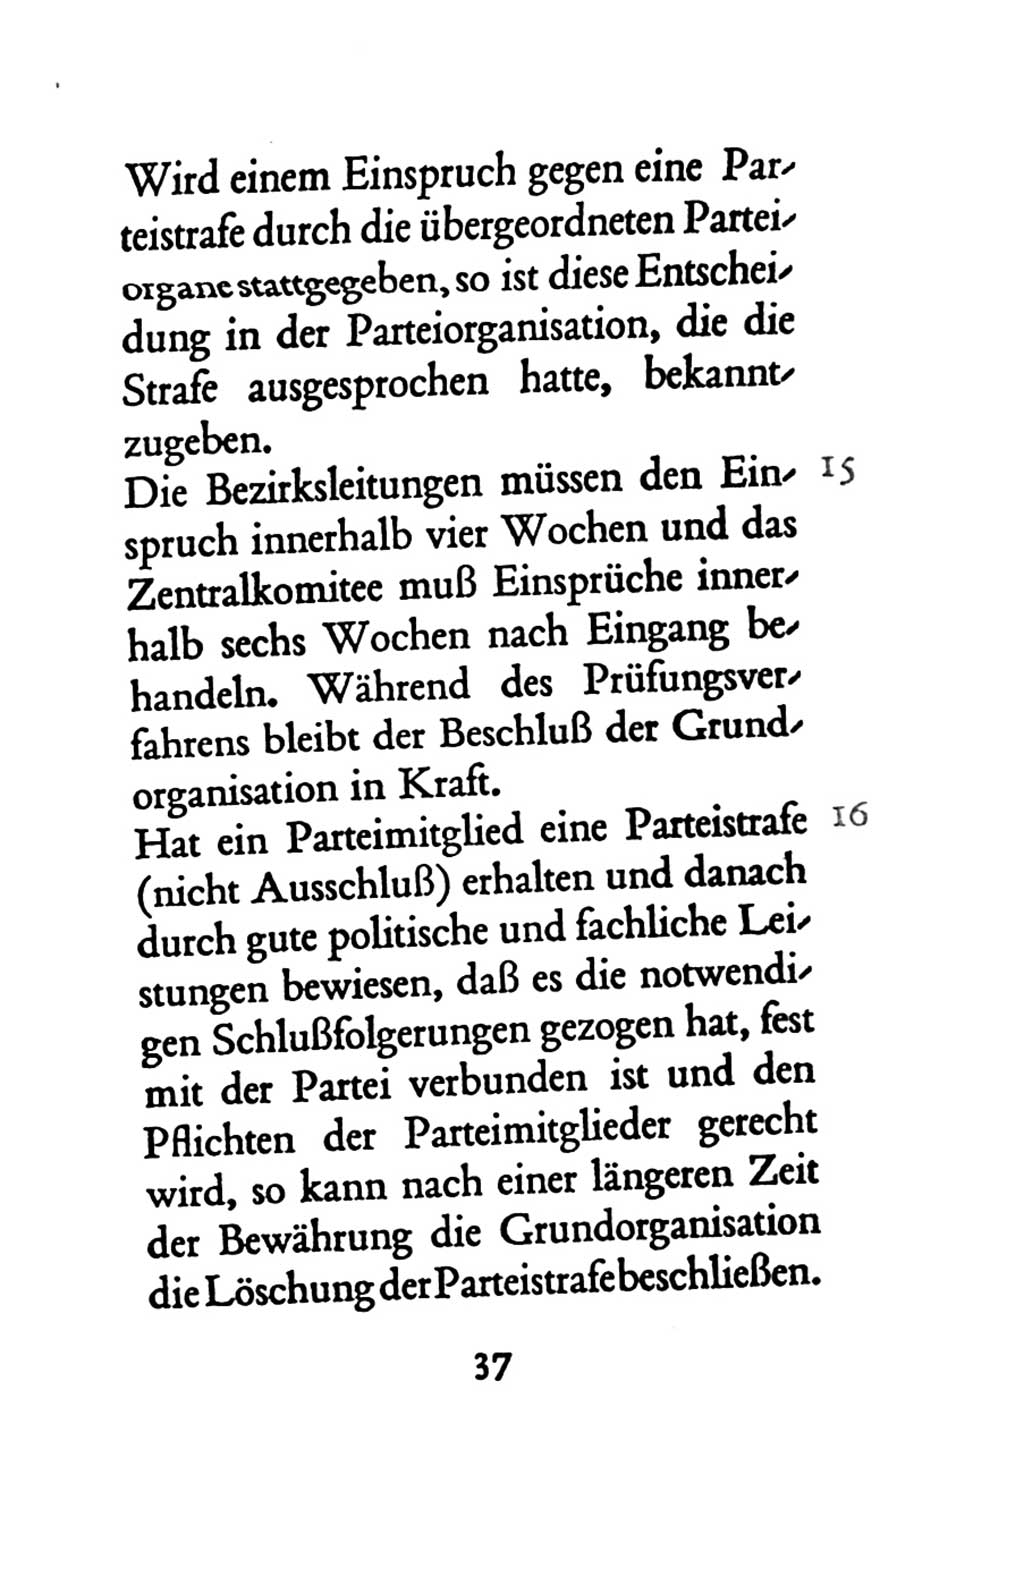 Statut der Sozialistischen Einheitspartei Deutschlands (SED) 1963, Seite 37 (St. SED DDR 1963, S. 37)